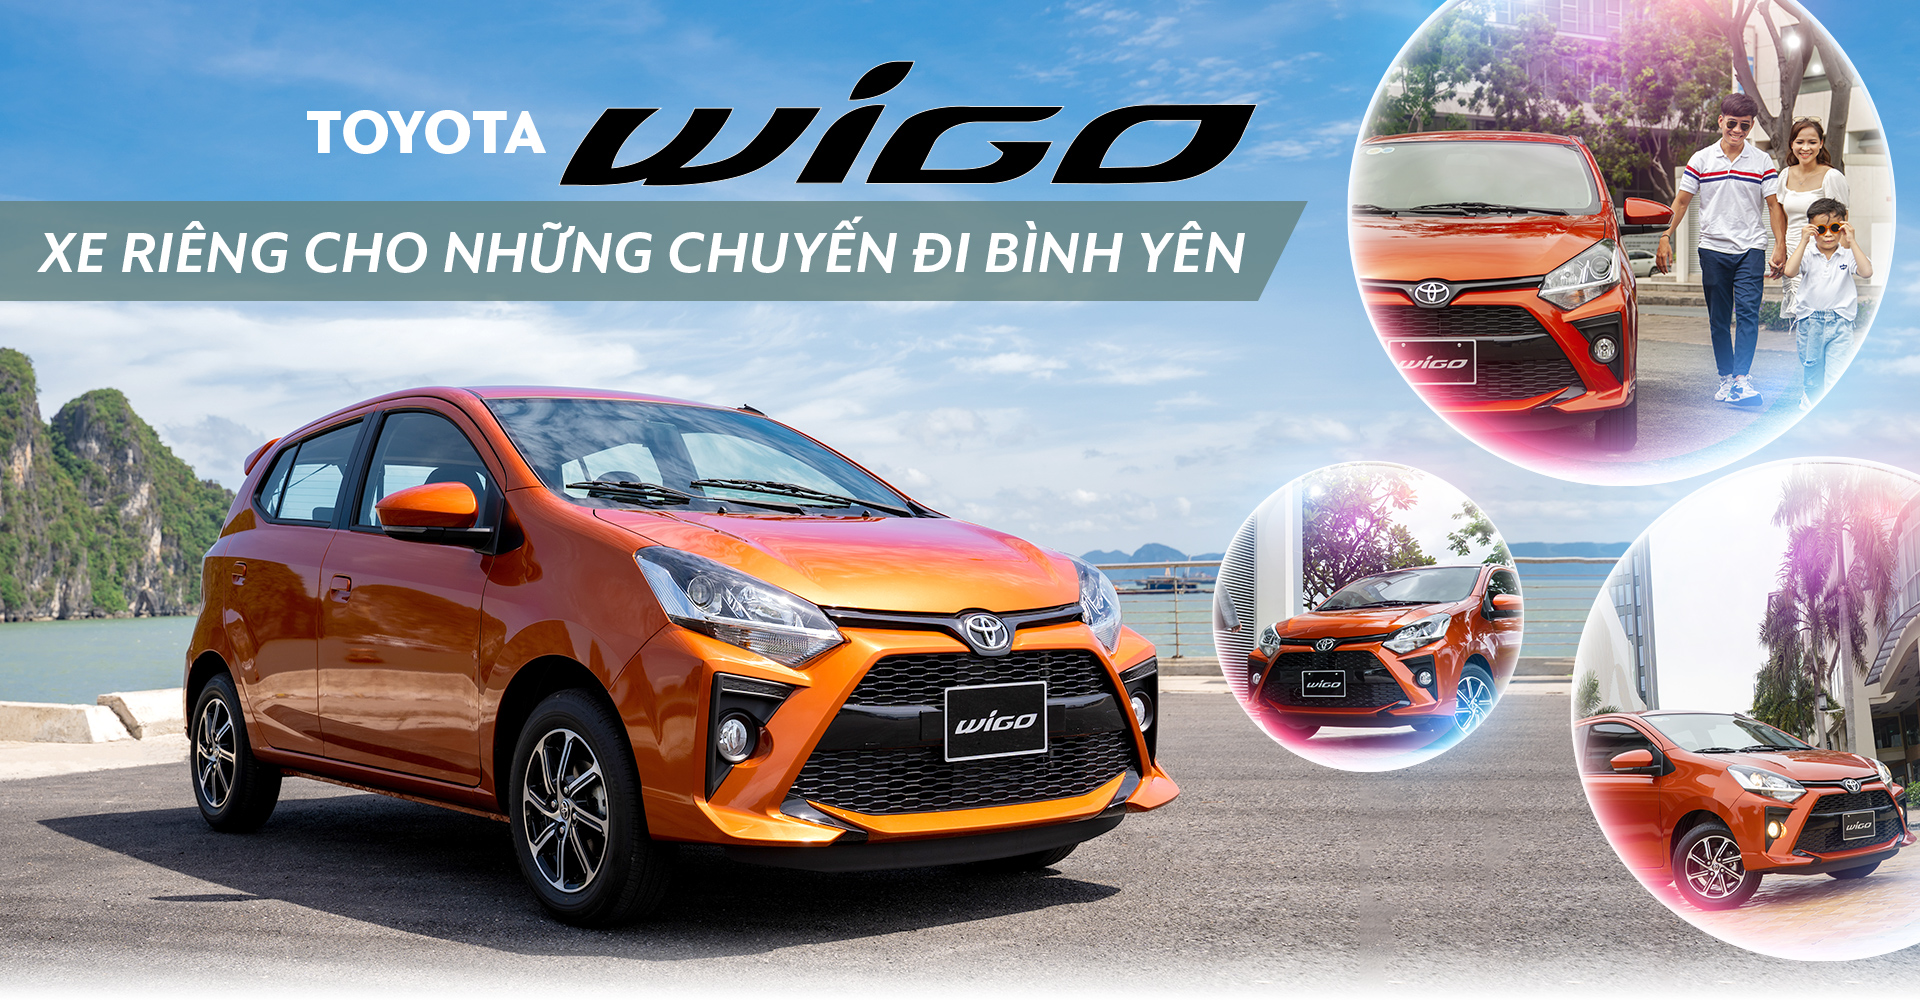 Toyota Wigo - Xe riêng cho những chuyến đi bình yên - 1